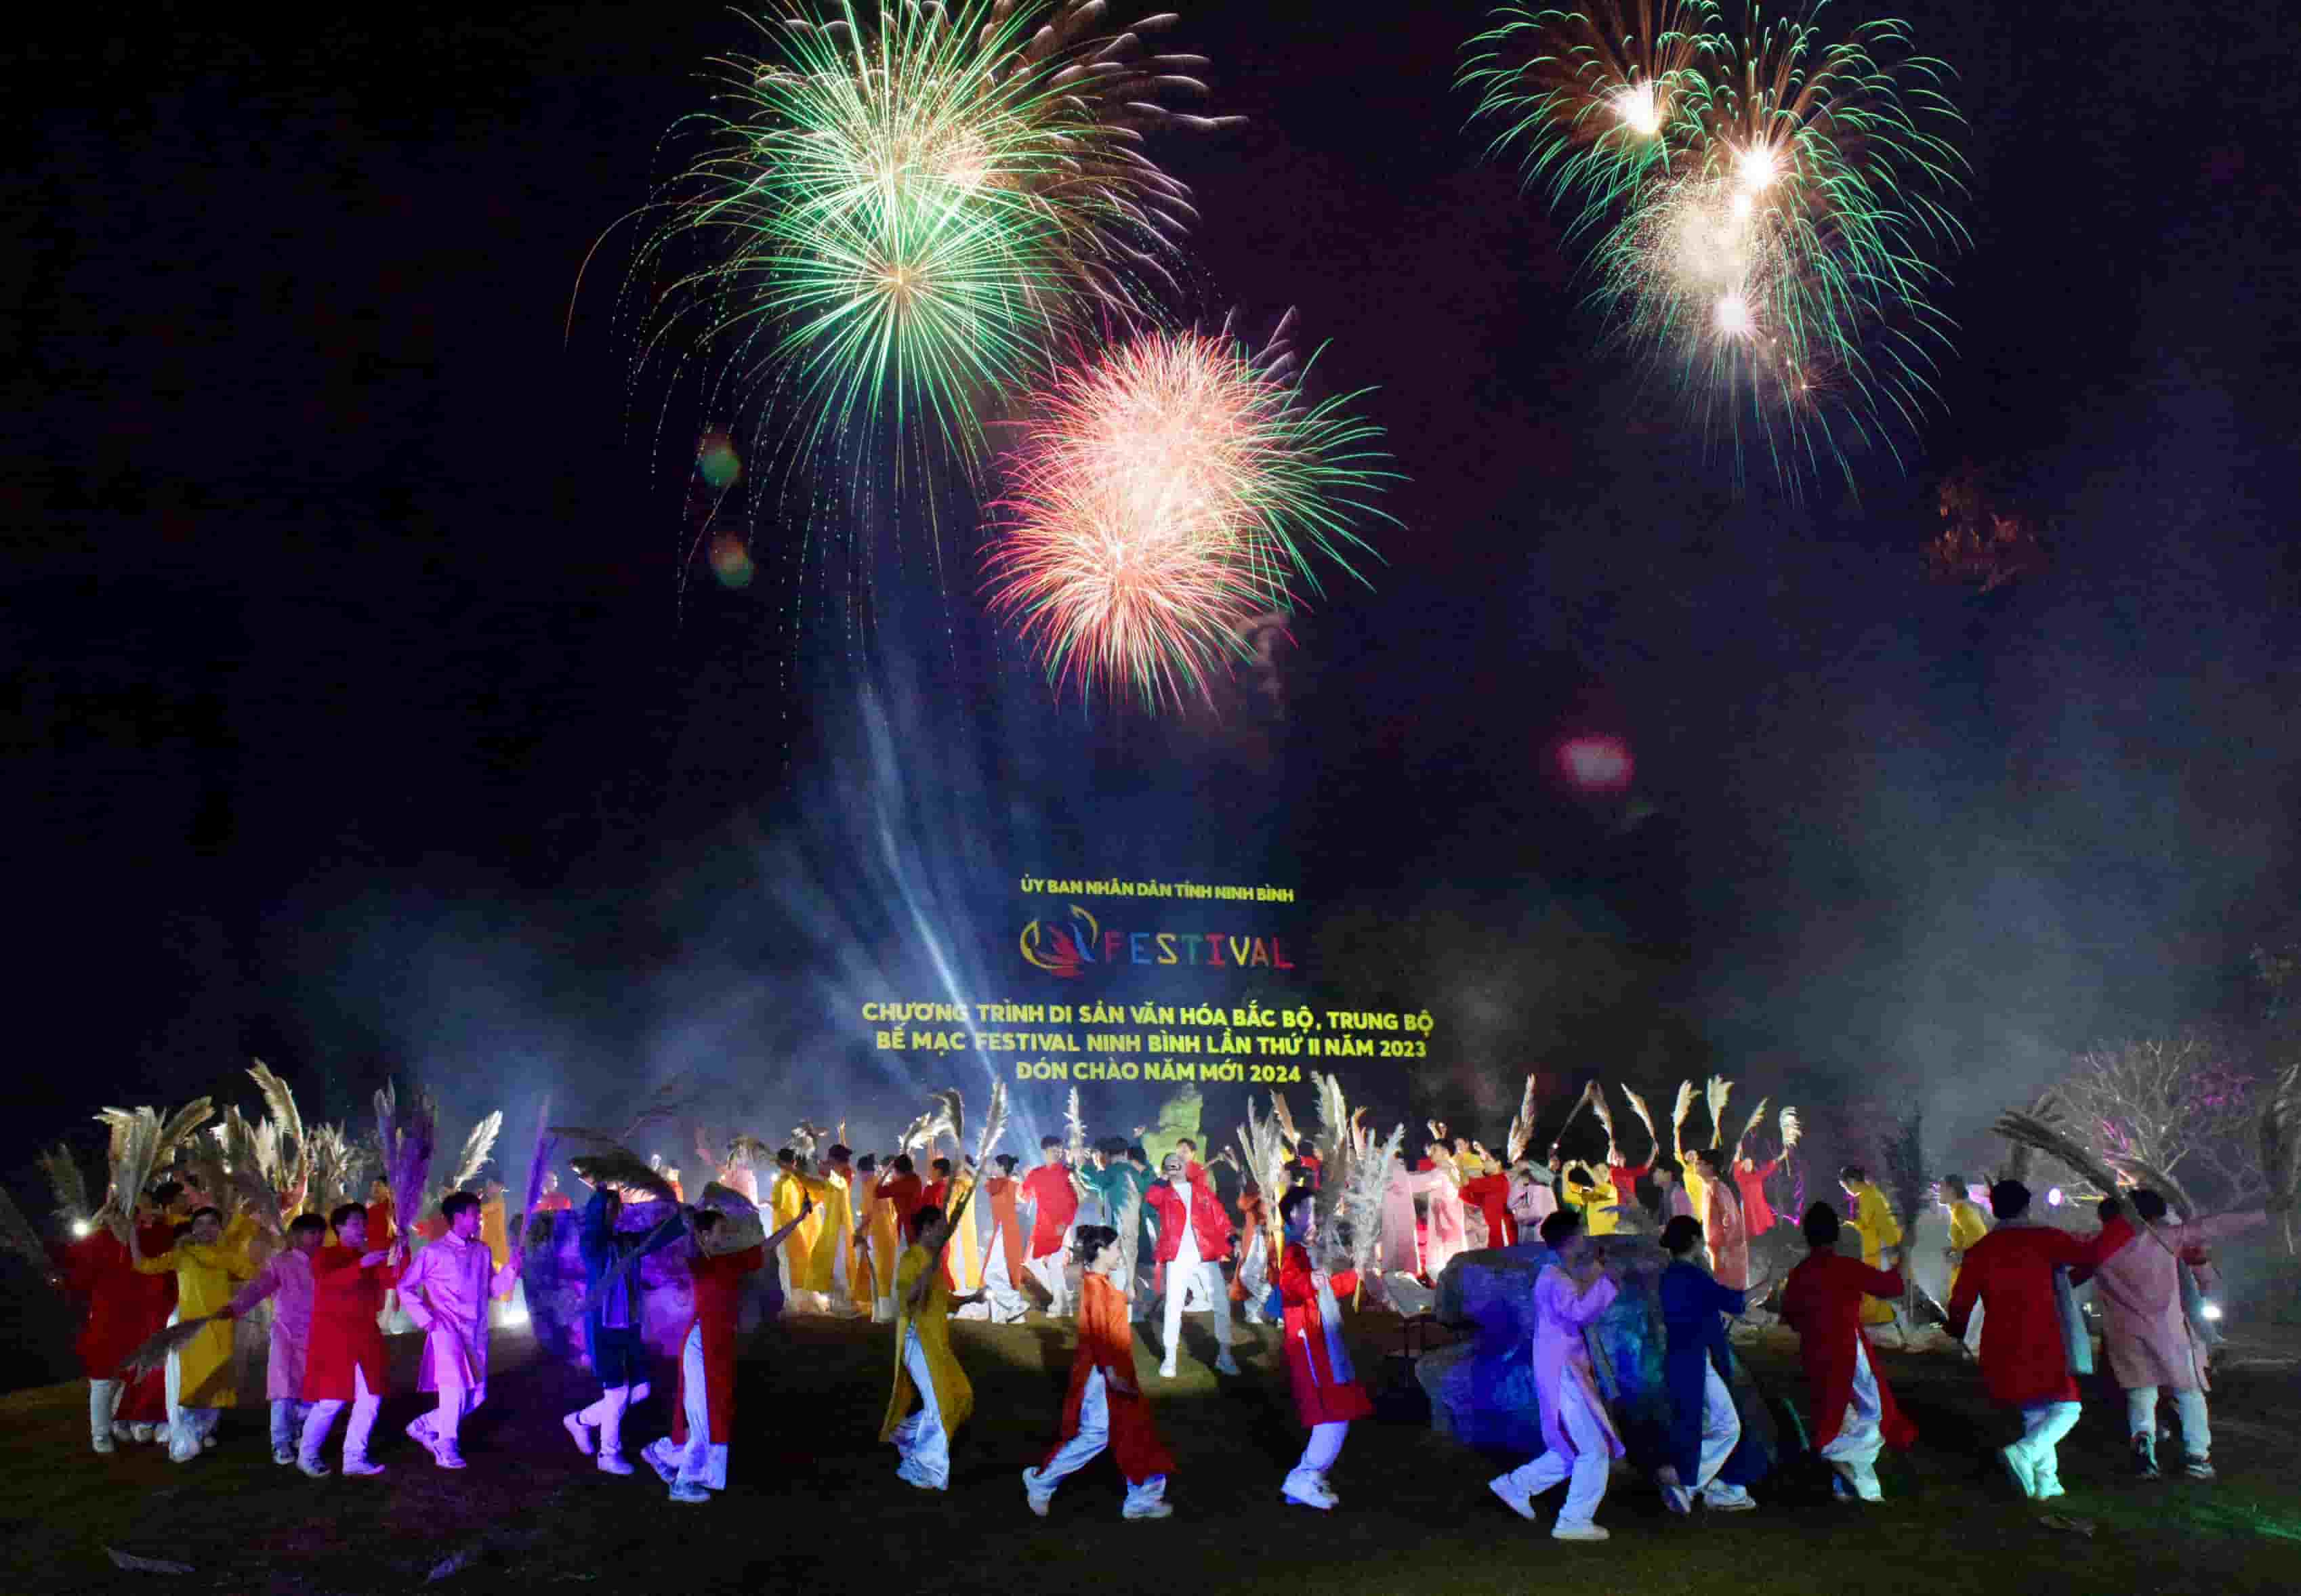 Phó Chủ tịch UBND tỉnh Ninh Bình Tống Quang Thìn nhấn mạnh, trong lần thứ hai tỉnh Ninh Bình tổ chức Festival, các hoạt động văn hóa, nghệ thuật đã có nhiều đổi mới, sáng tạo, mang lại cho người xem cách nhìn, cách tiếp cận khác về các di sản văn hóa truyền thống của dân tộc.